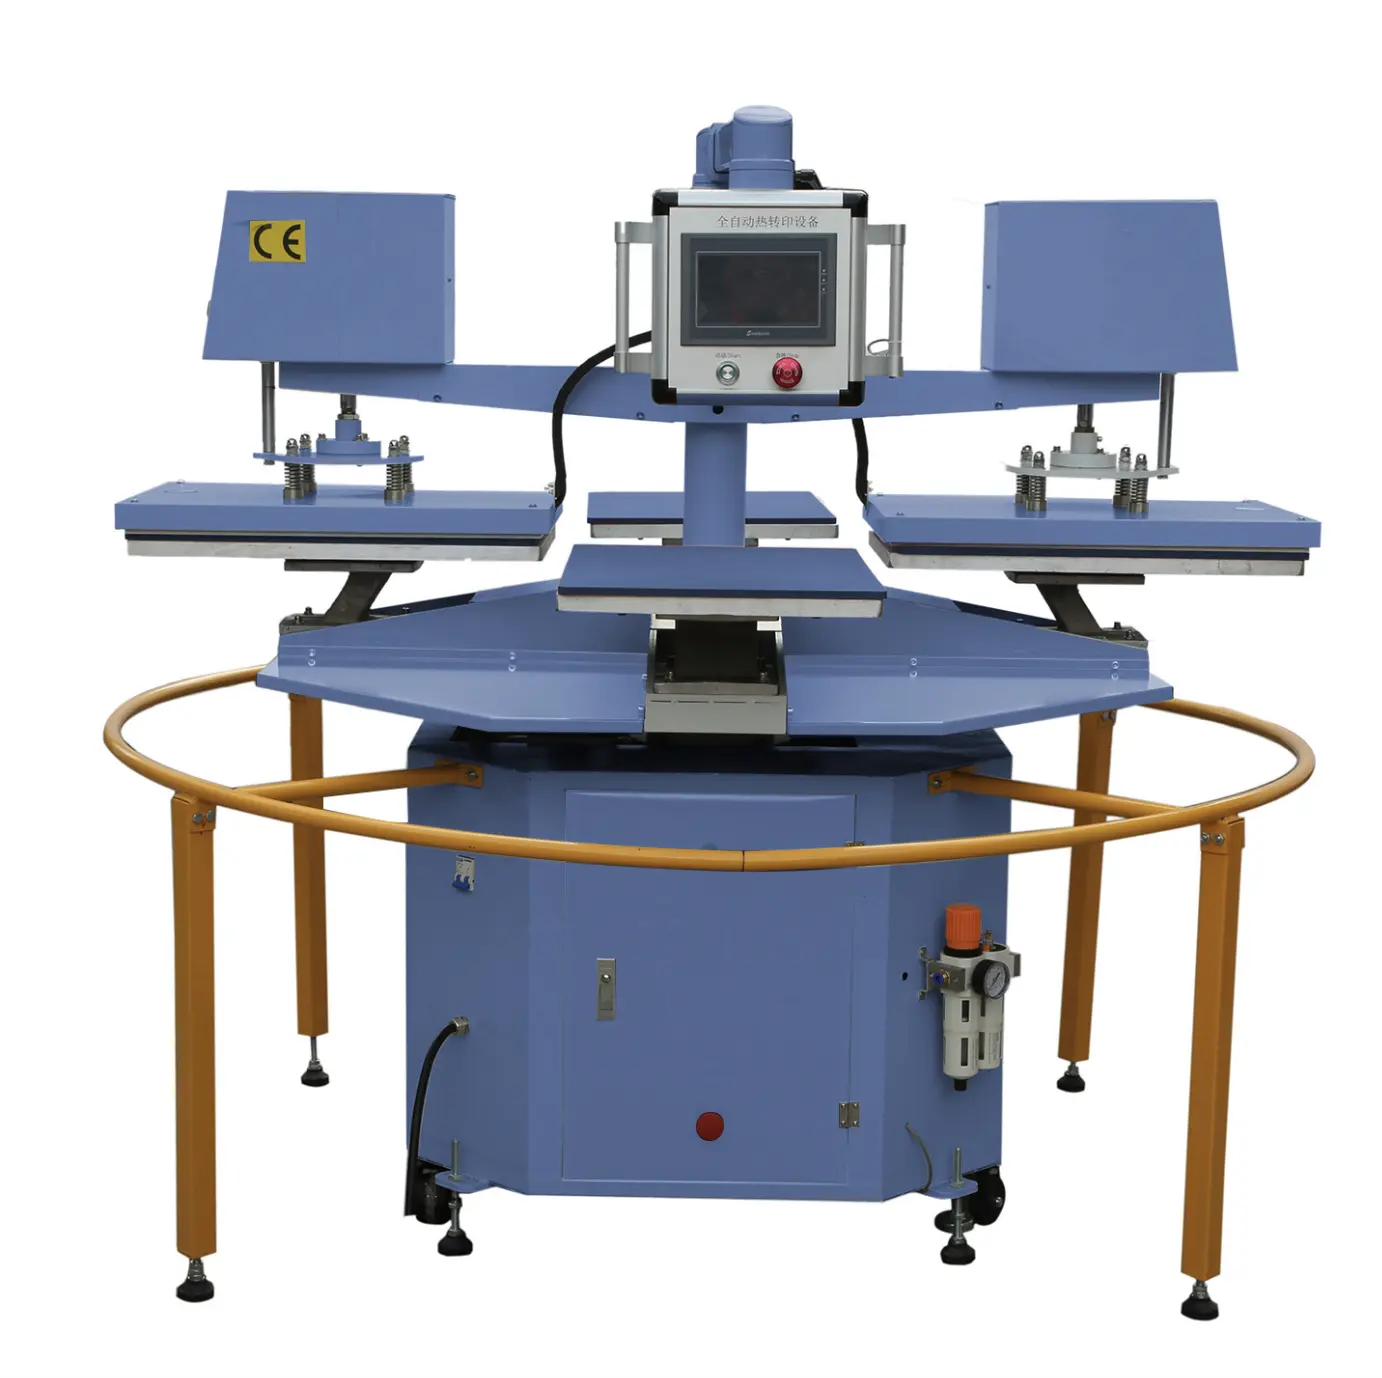 ي رأس مزدوج التلقائي الطباعة بالتكبير الصناعية الدورية أربعة محطة الحرارة الصحافة آلة تي شيرت